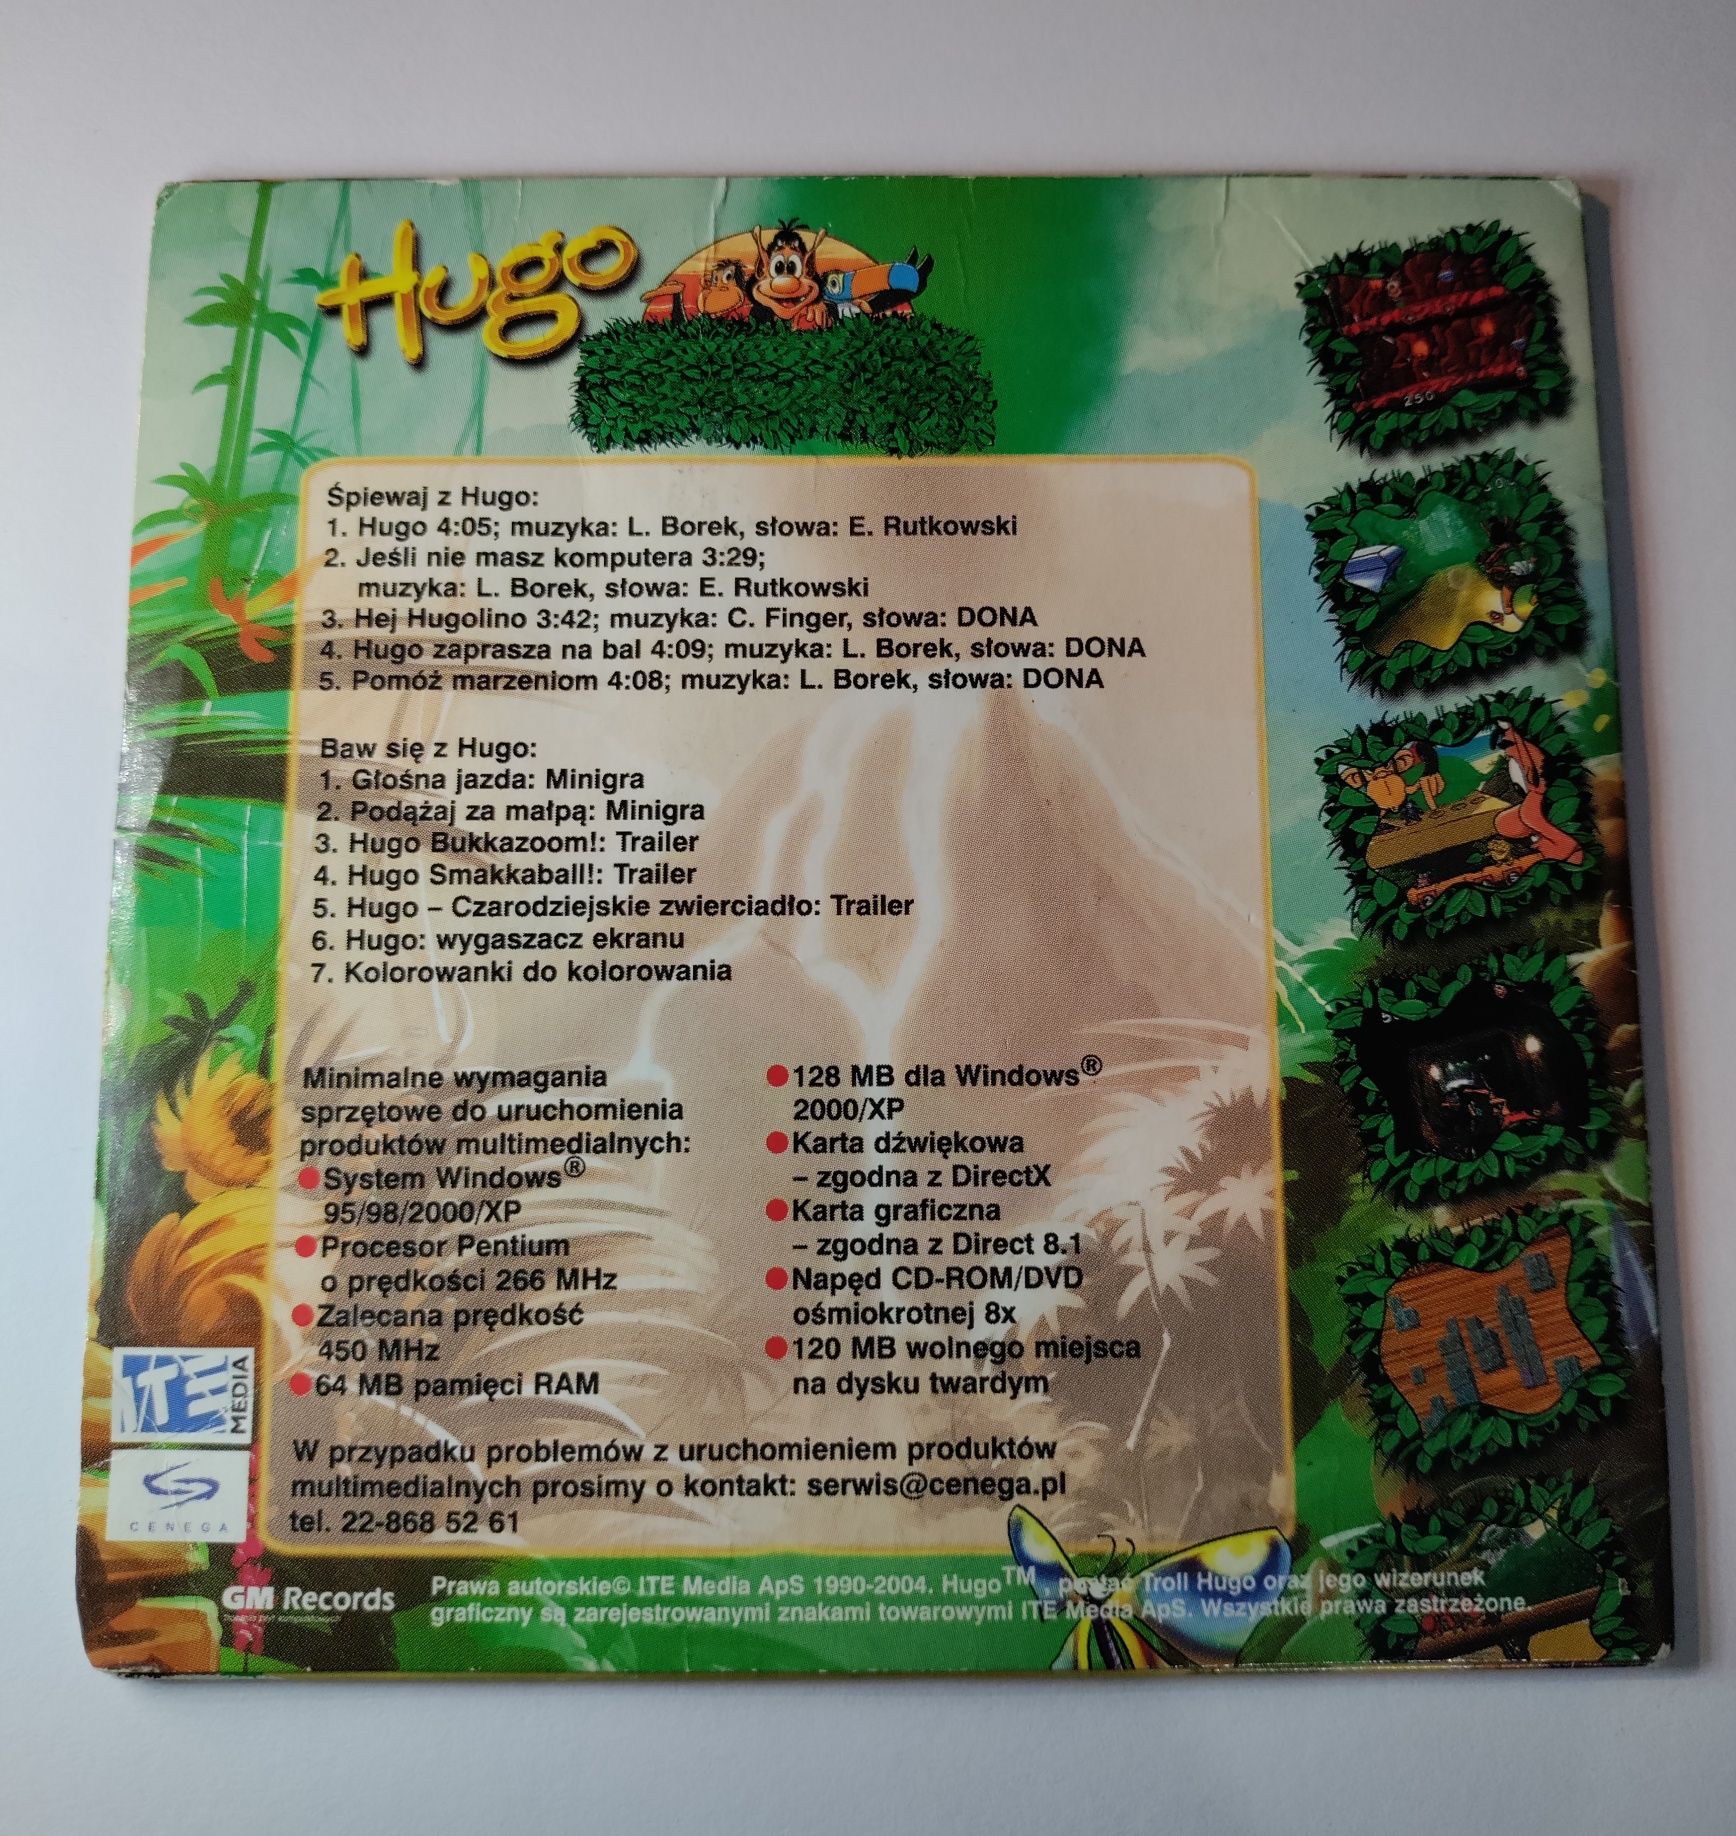 BAW SIĘ Z HUGO płyta gra PC